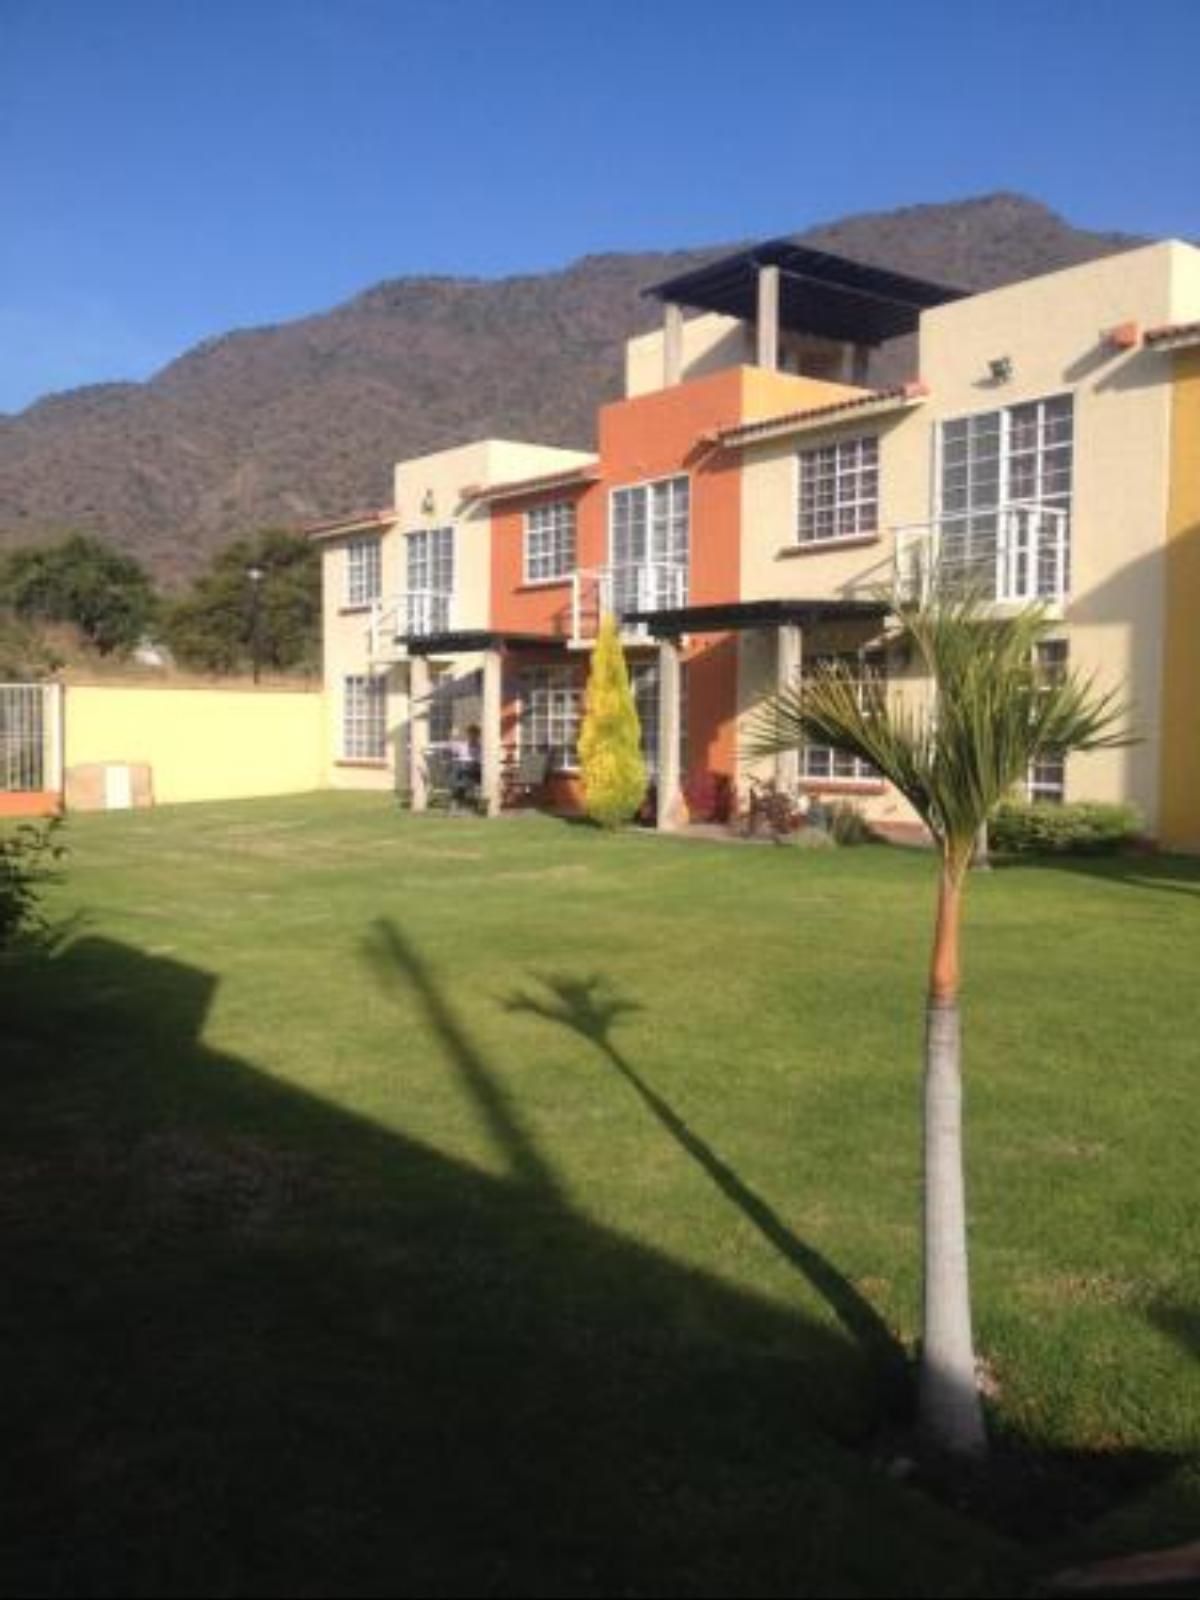 Casa con vista al lago de chapala Hotel Chapala Mexico